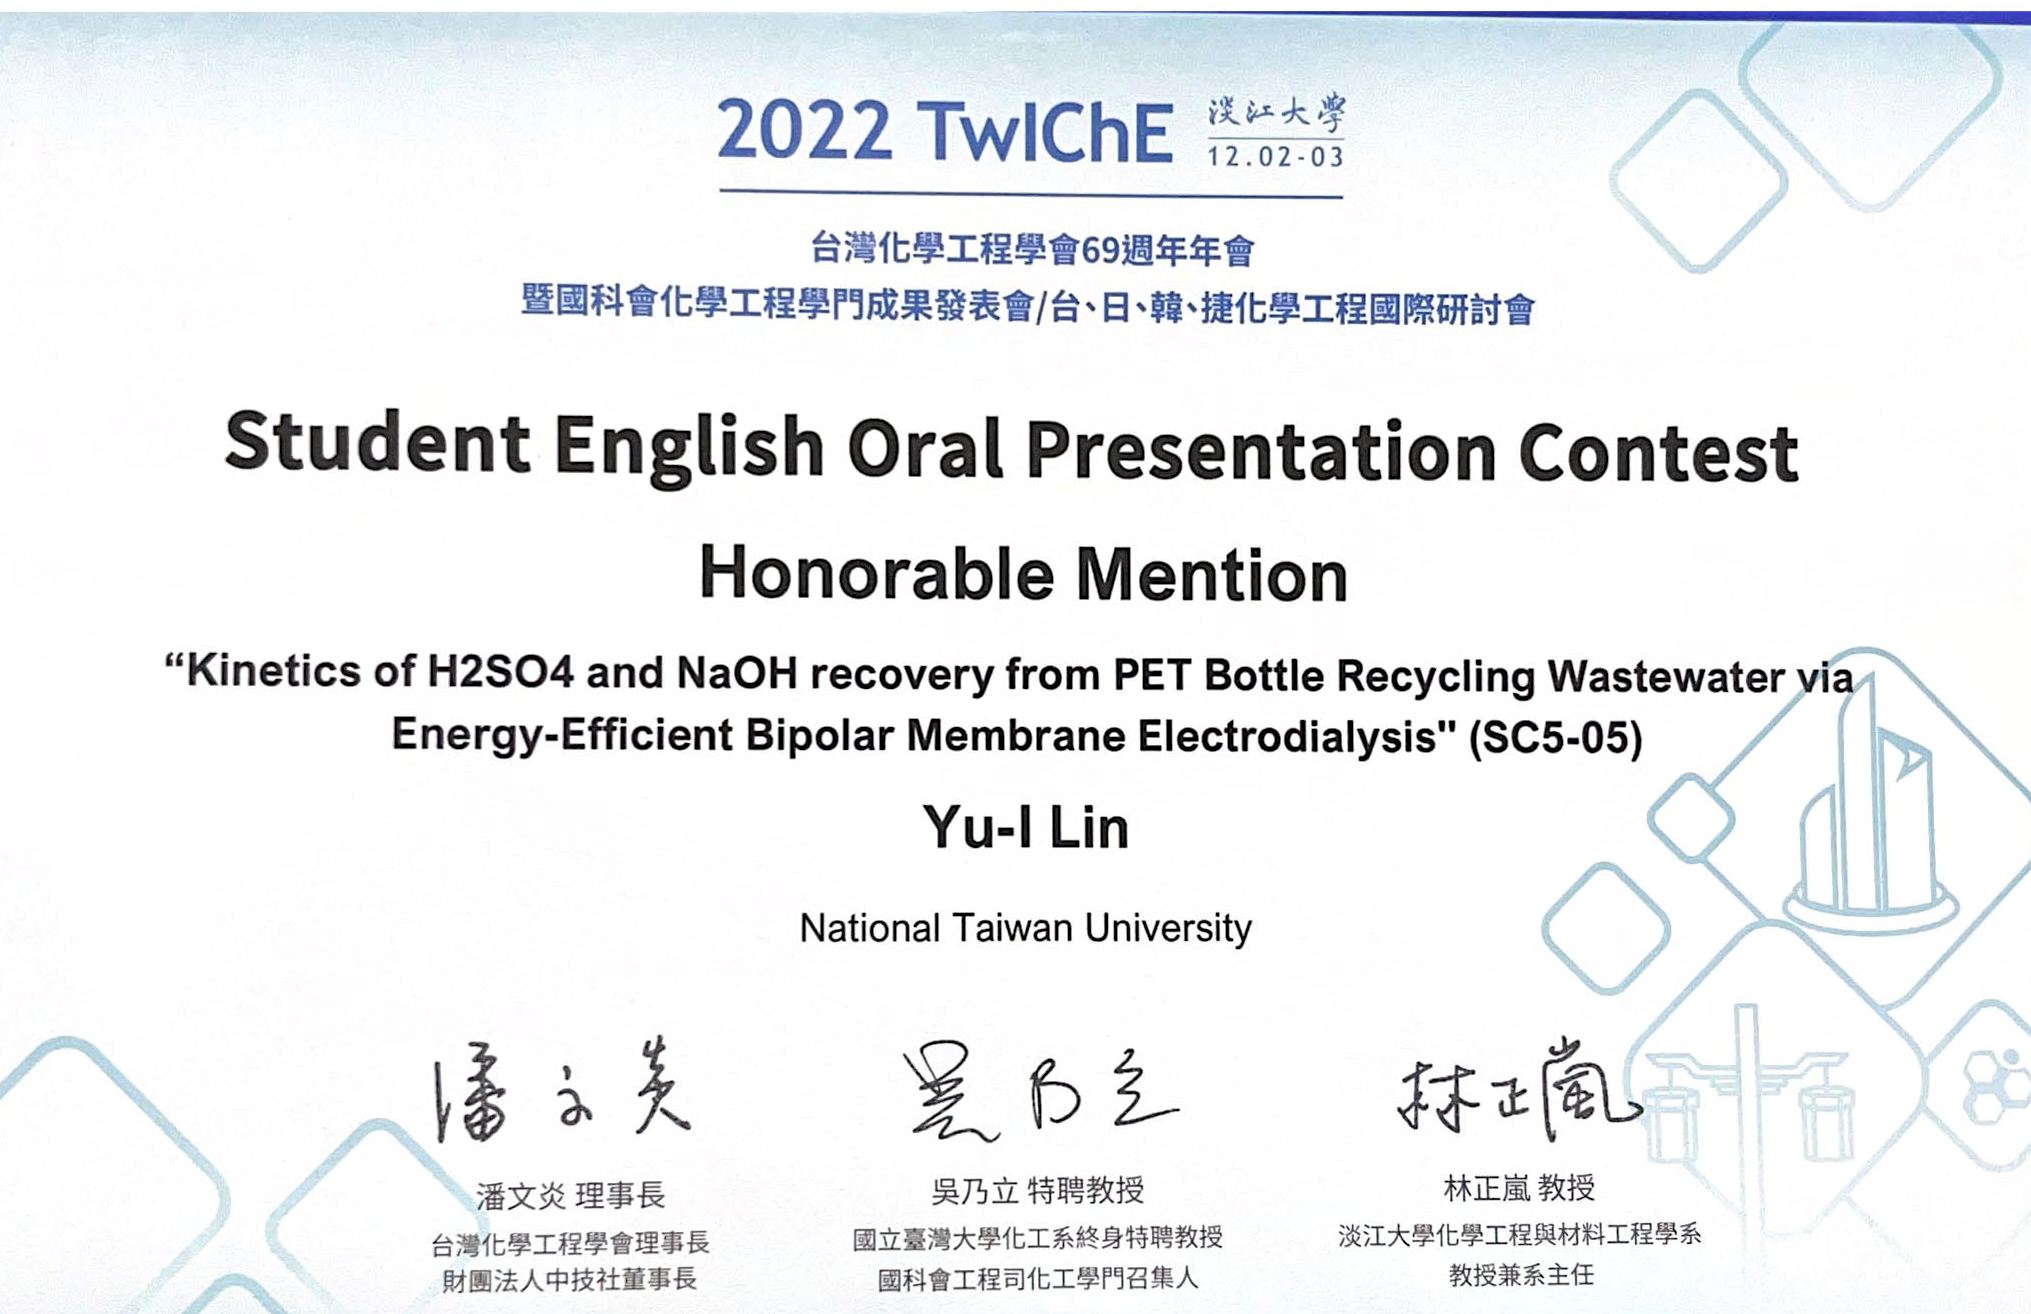 Congratulation to Yui for the English Presentation Award at 2022 TwIChE